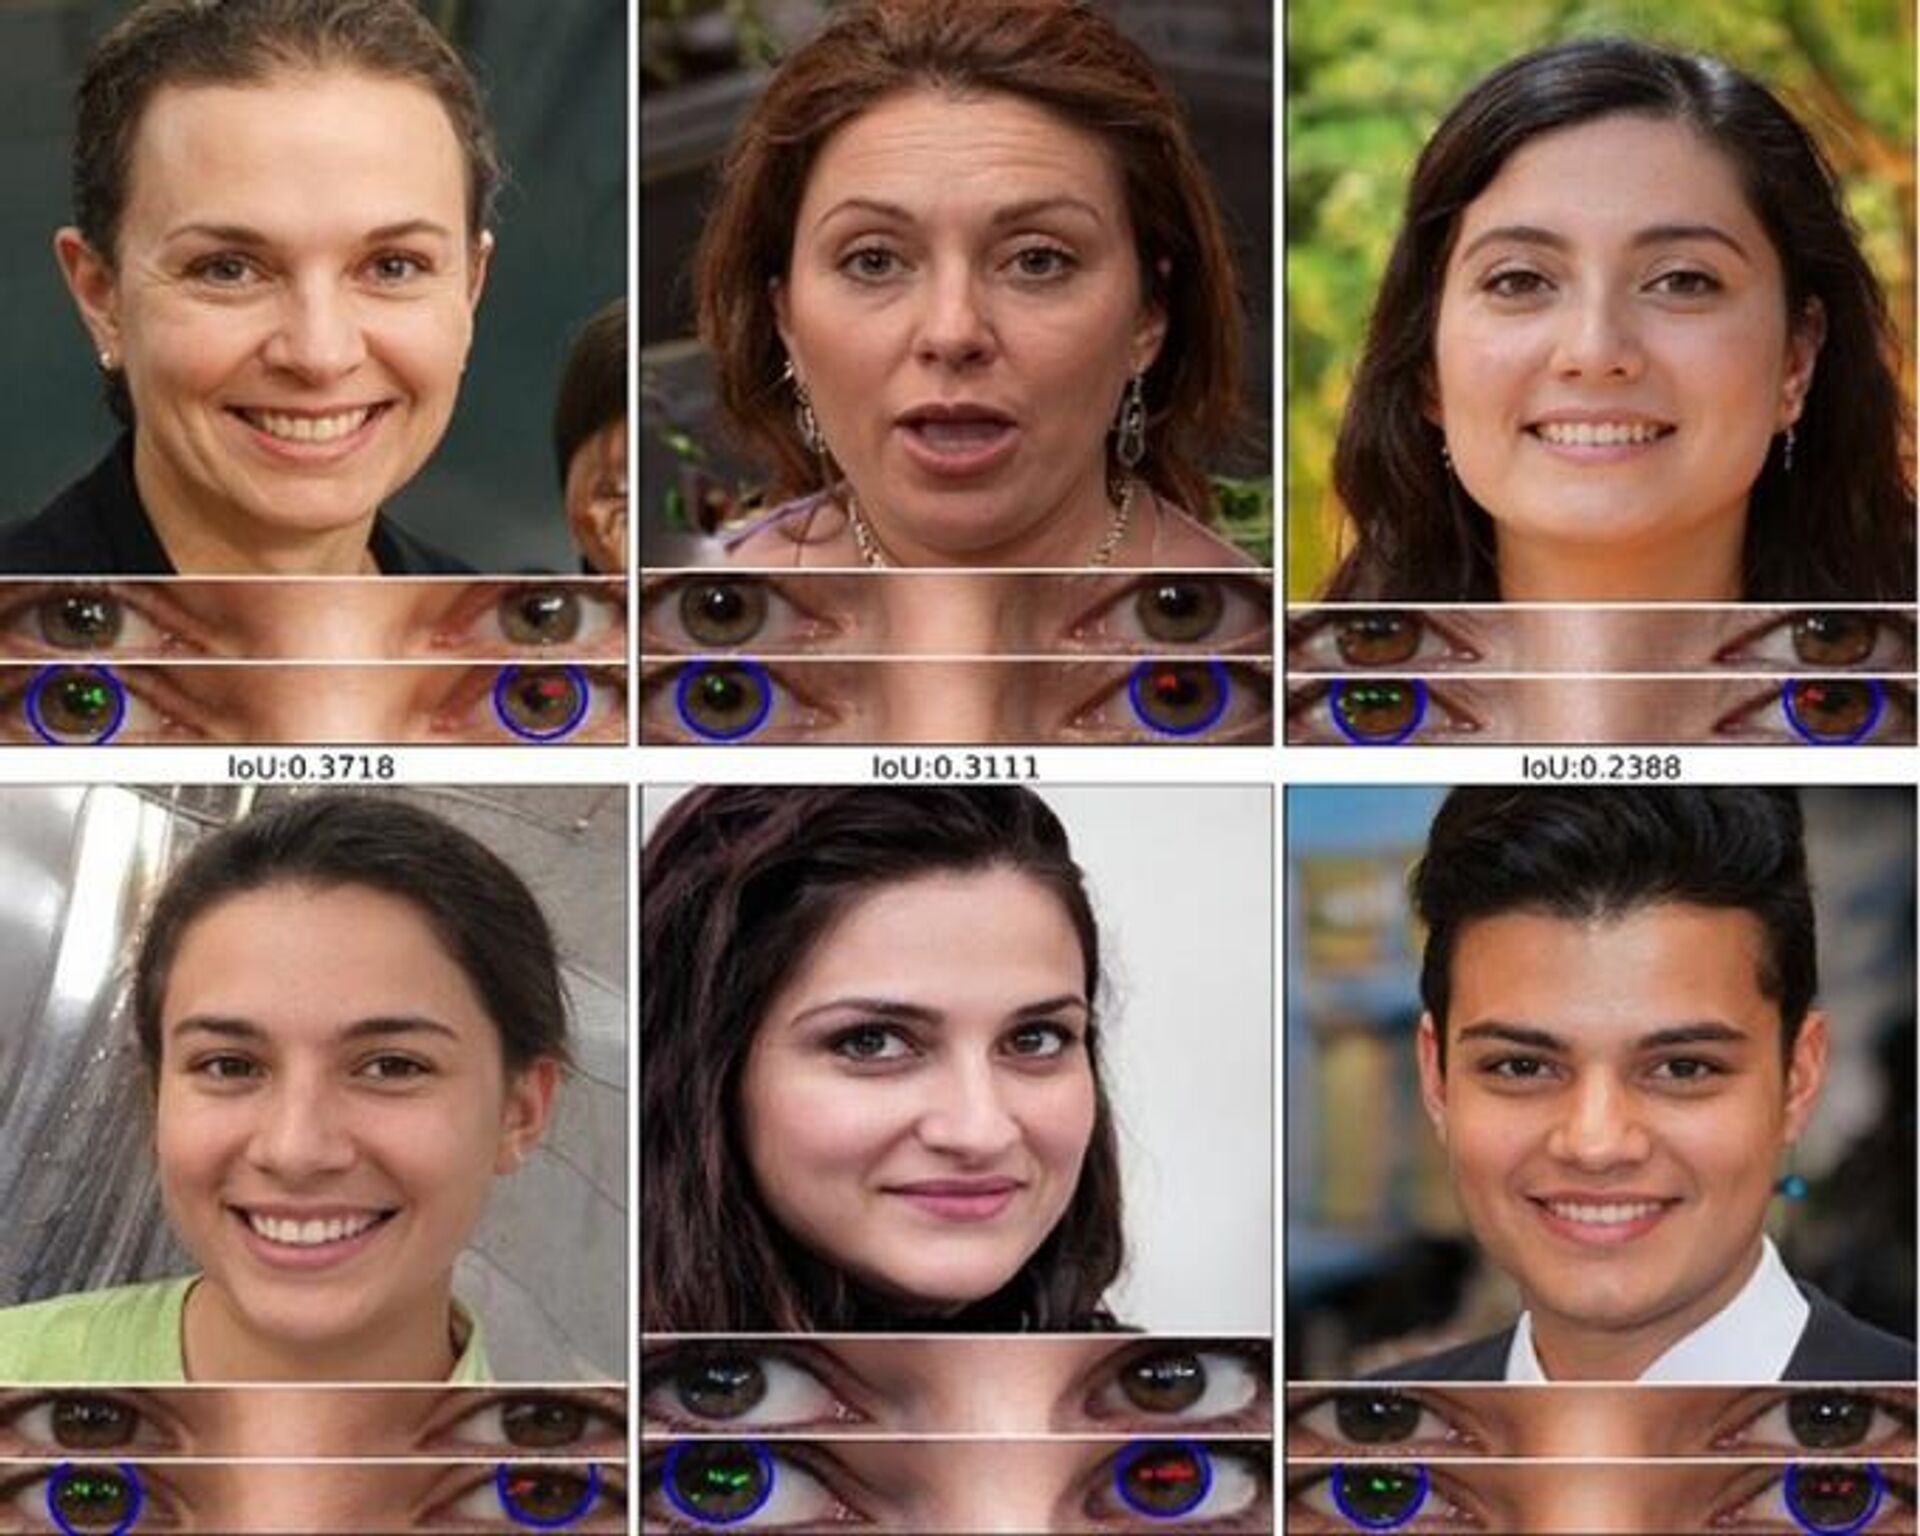 Unas caras de personas creadas con la tecnología de deepfake - Sputnik Mundo, 1920, 16.03.2021